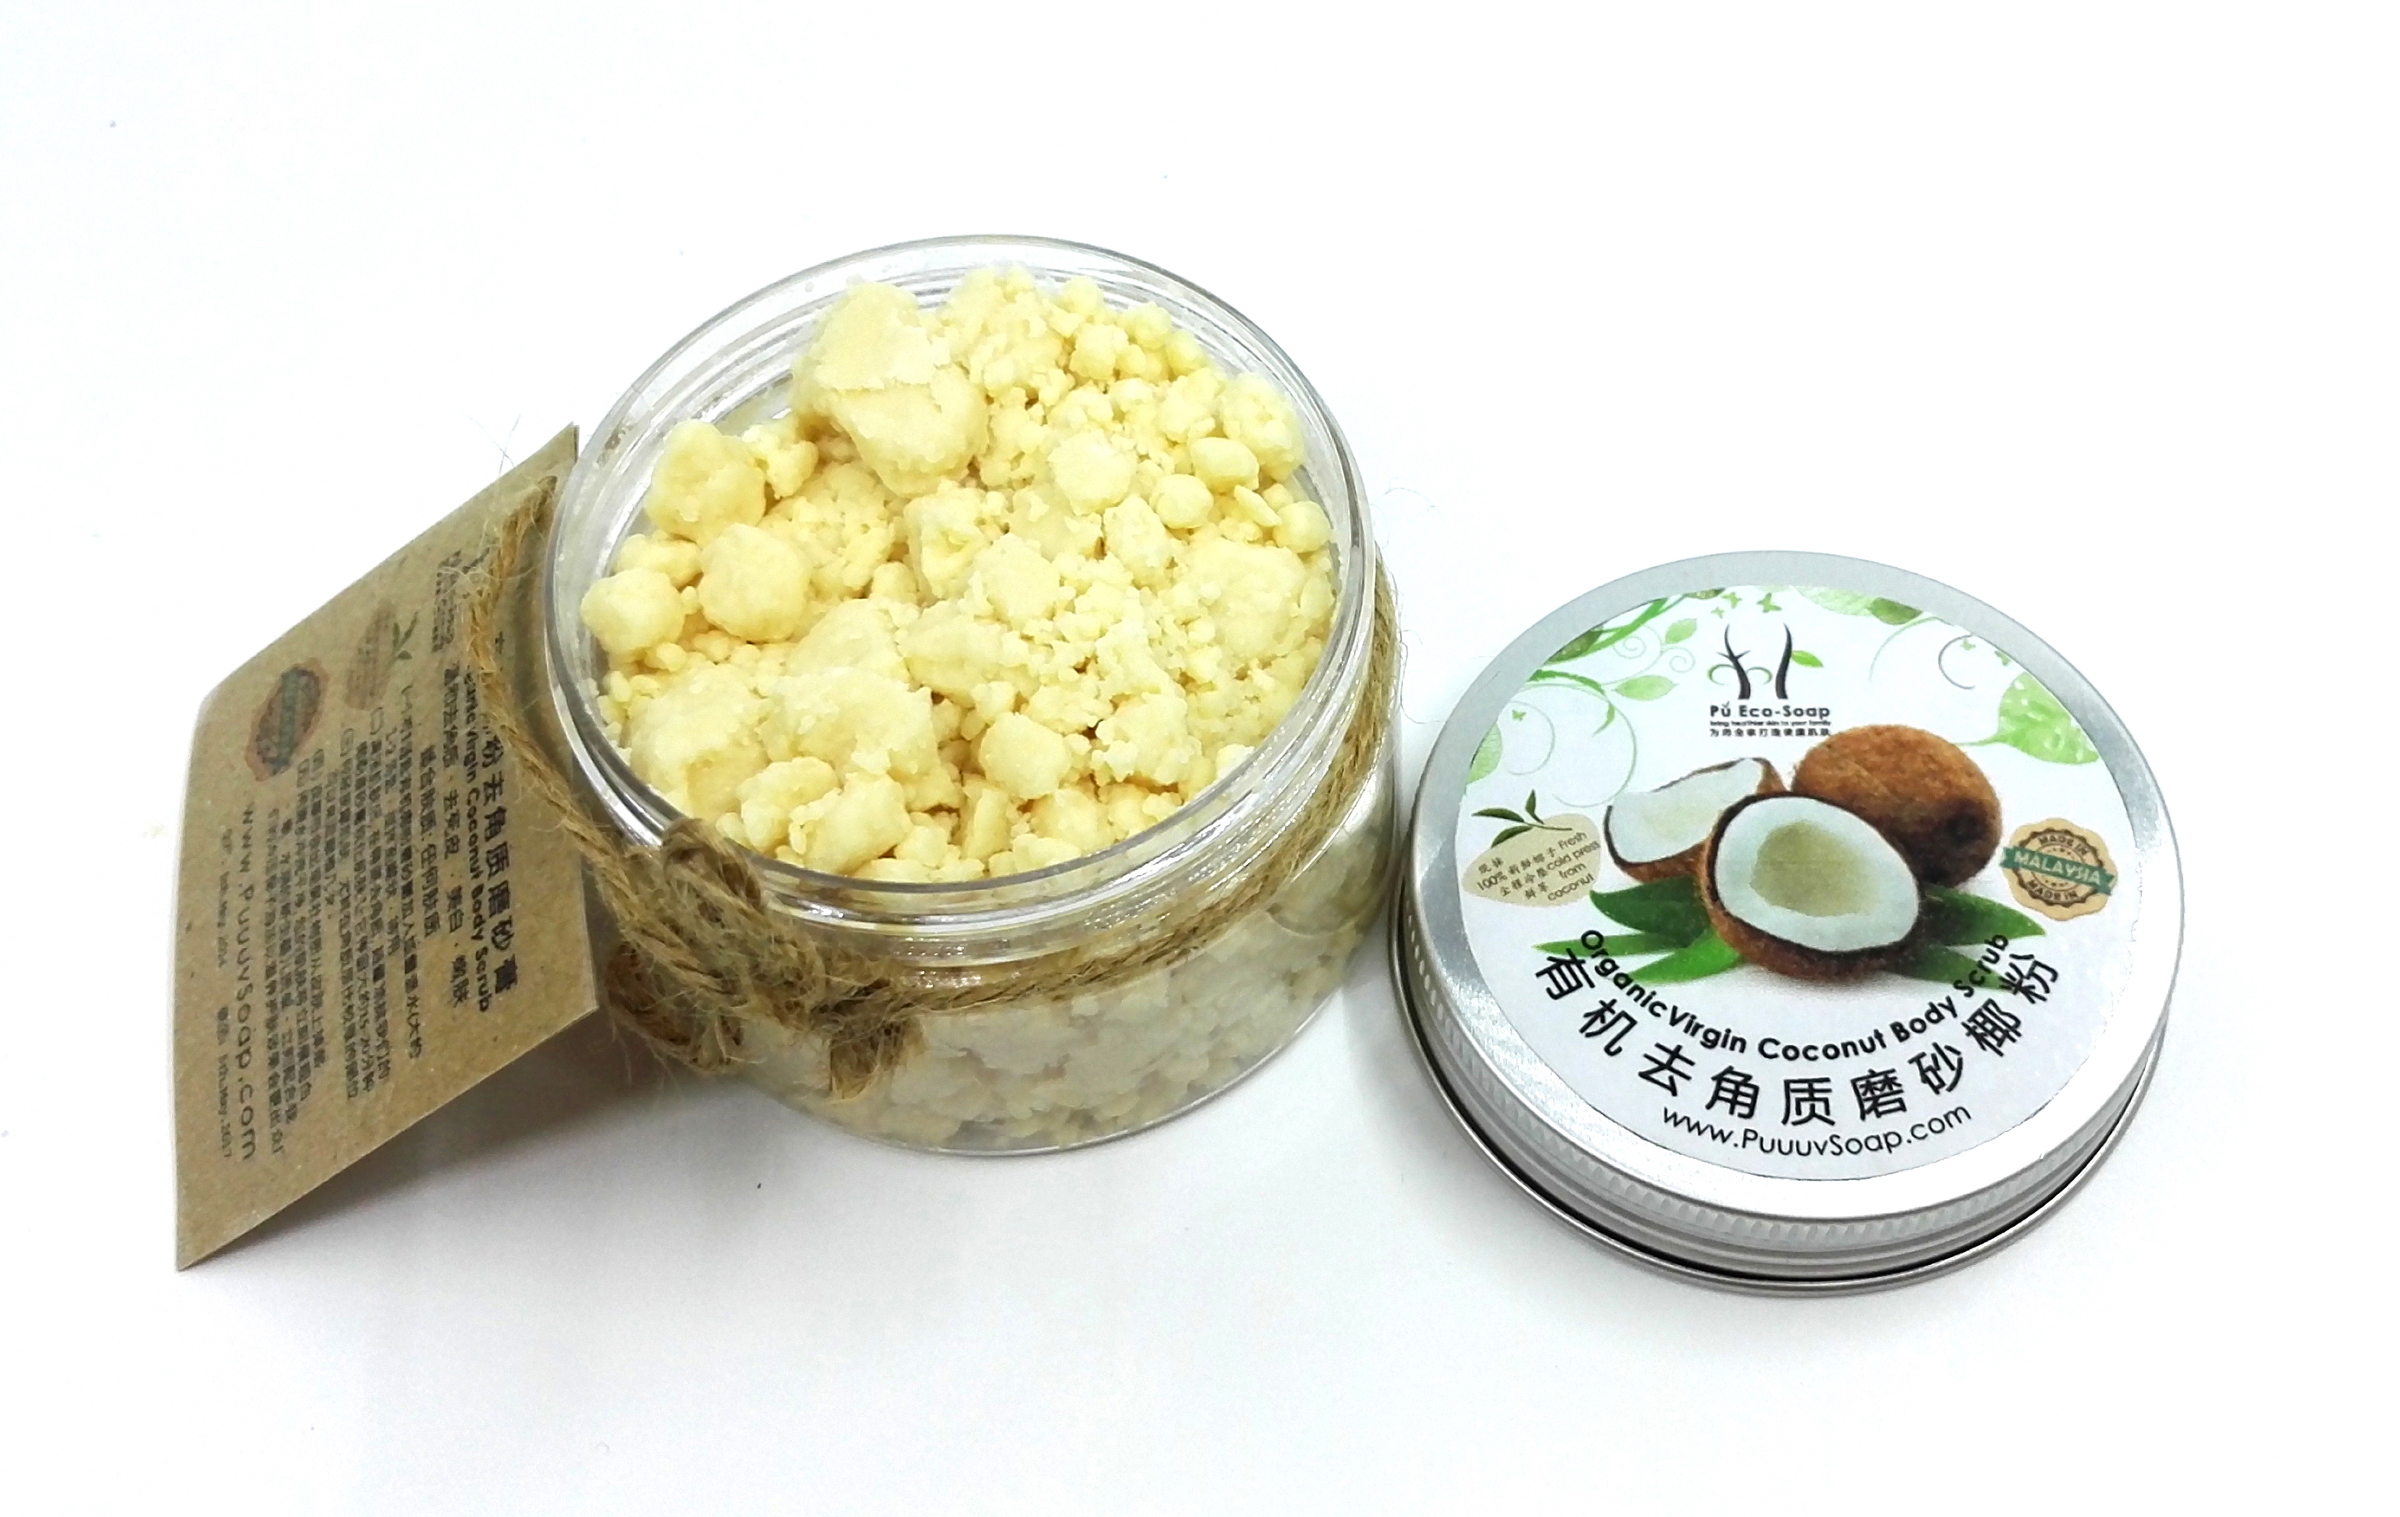 NLO-002 - Handmade Organic Coconut Body Scrub Powder 120g